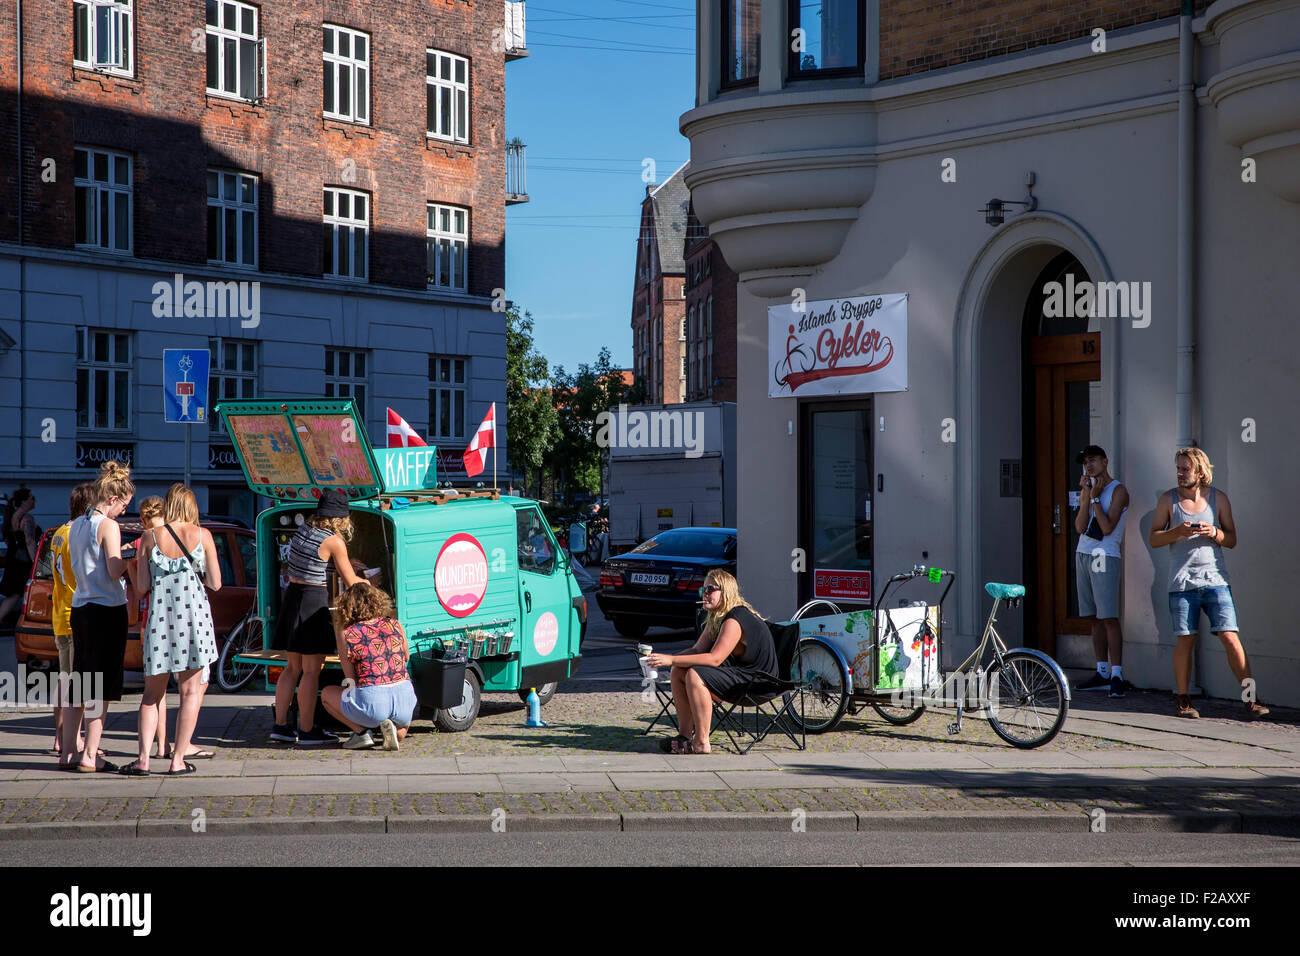 People queuing in front of a mobile coffee van, Islands Brygge, Copenhagen, Denmark Stock Photo